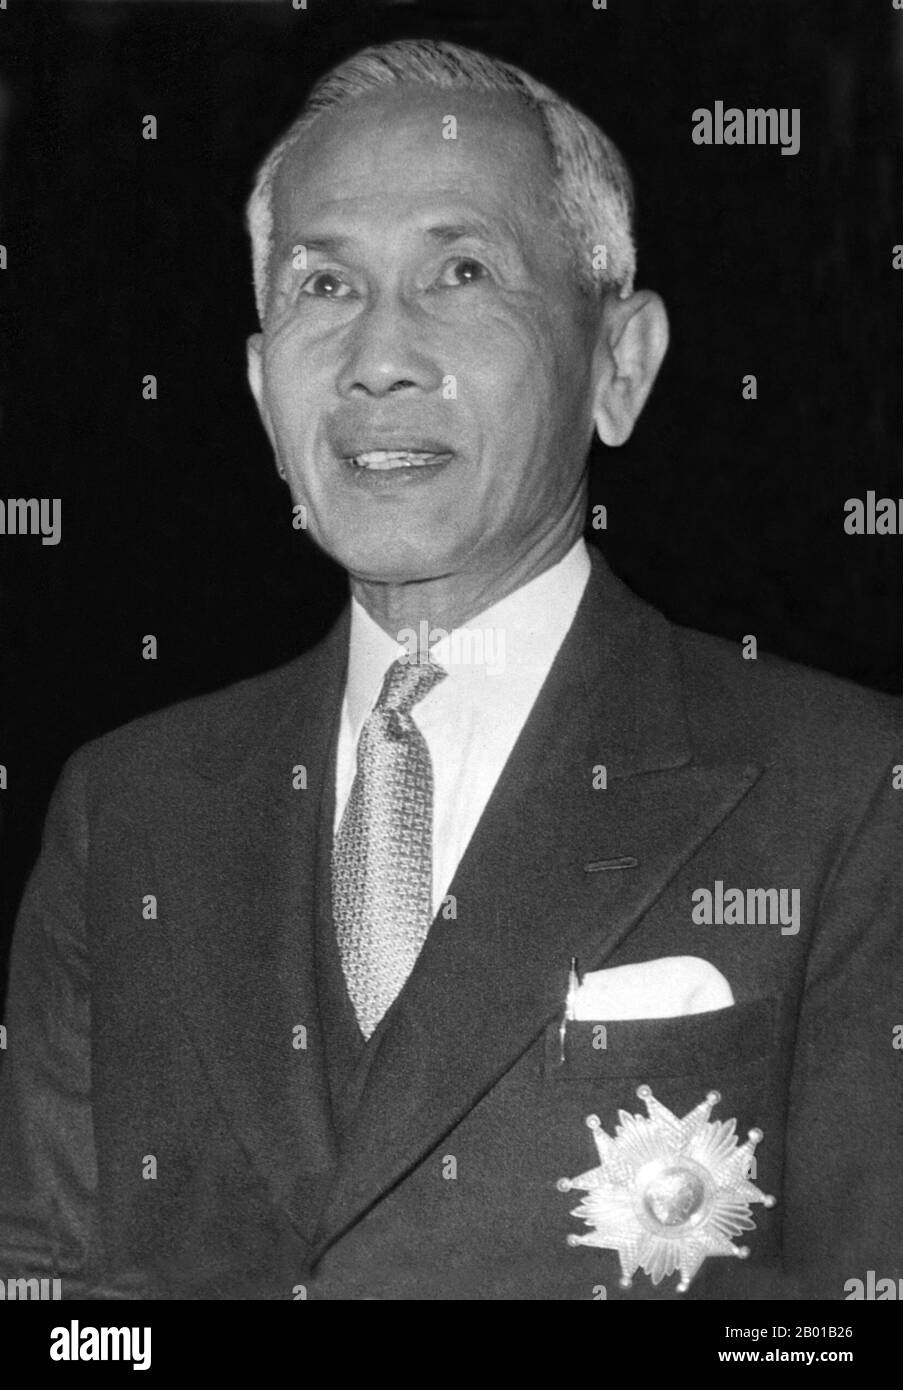 Thailand: Feldmarschall Plaek Pibulsongkram (14. Juli 1897 - 11. Juni 1964), allgemein bekannt als Phibun Songkhram, Premierminister und Militärdiktator von 1938 bis 1944 und 1948 bis 1957, Ende 1950s. Pibulsongkram war einer der Führer des militärischen Zweiges der Volkspartei, der 1932 einen Staatsstreich inszenierte und Thailands absolute Monarchie stürzte. 1938 ersetzte Pibulsongkram Phraya Phahol als Premierminister. Pibulsongkram begann, das Tempo der Modernisierung in Thailand zu erhöhen. Durch die Manipulation der Massenmedien unterstützte Pibulsonggram Faschismus und Nationalismus. Stockfoto